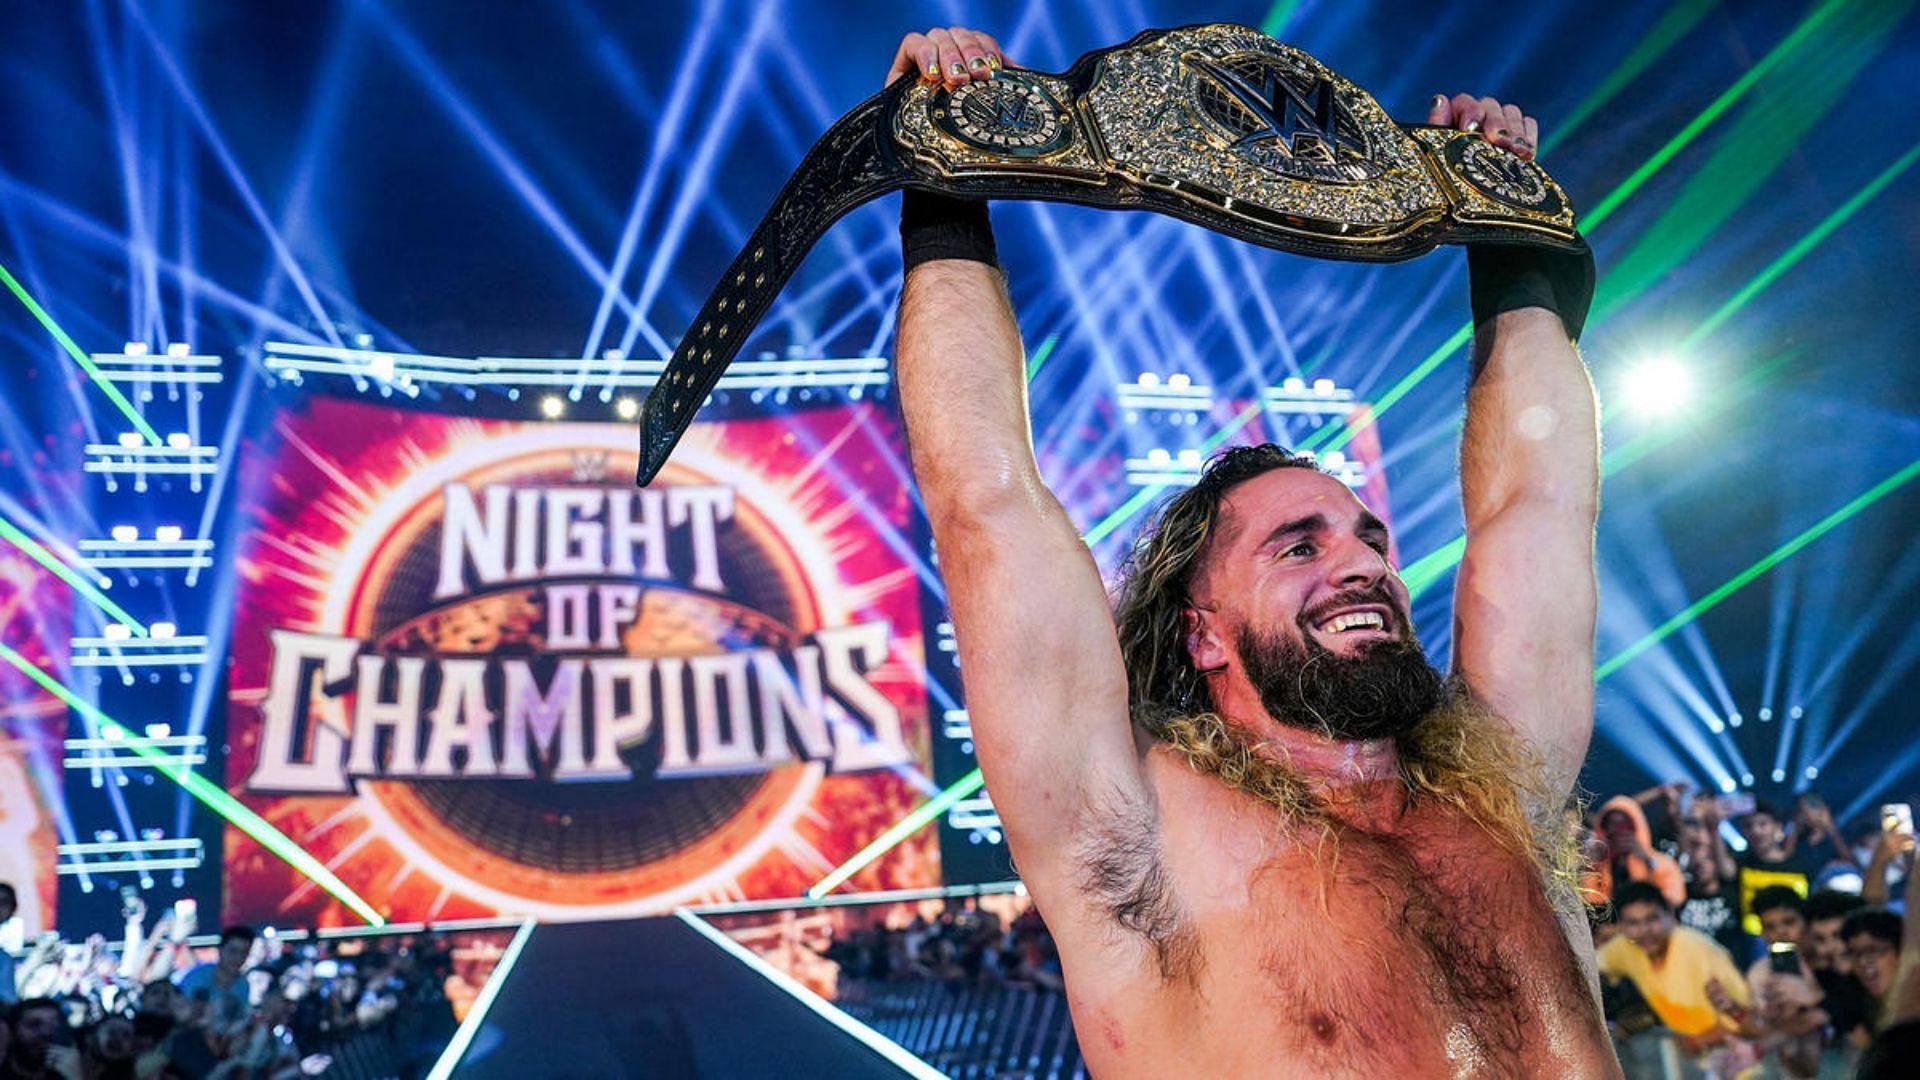 Seth Rollins won the World Heavyweight Championship at WWE Night of Champions